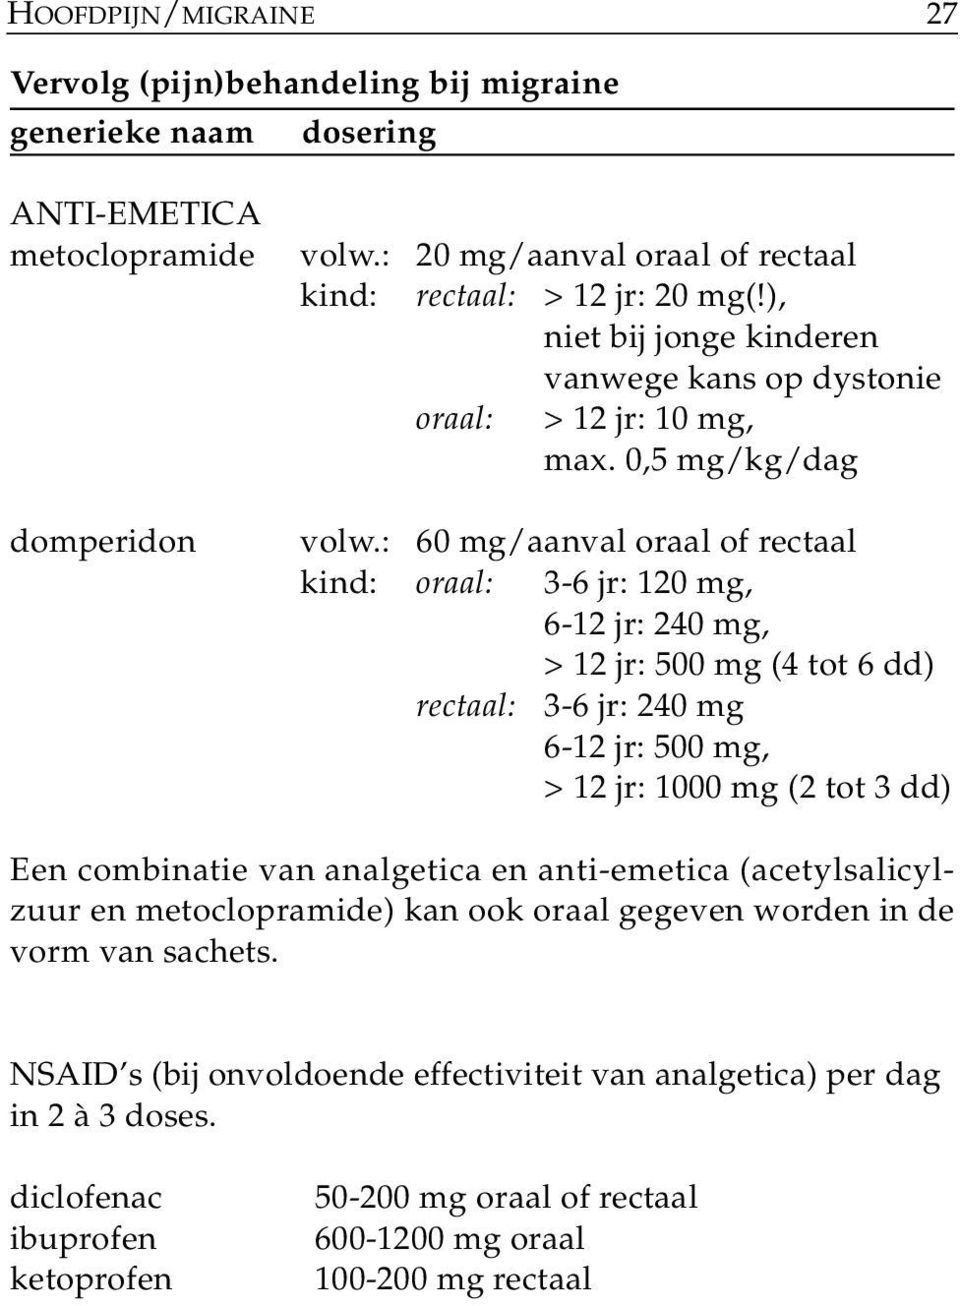 : 60 mg/aanval oraal of rectaal kind: oraal: 3-6 jr: 120 mg, 6-12 jr: 240 mg, > 12 jr: 500 mg (4 tot 6 dd) rectaal: 3-6 jr: 240 mg 6-12 jr: 500 mg, > 12 jr: 1000 mg (2 tot 3 dd) Een combinatie